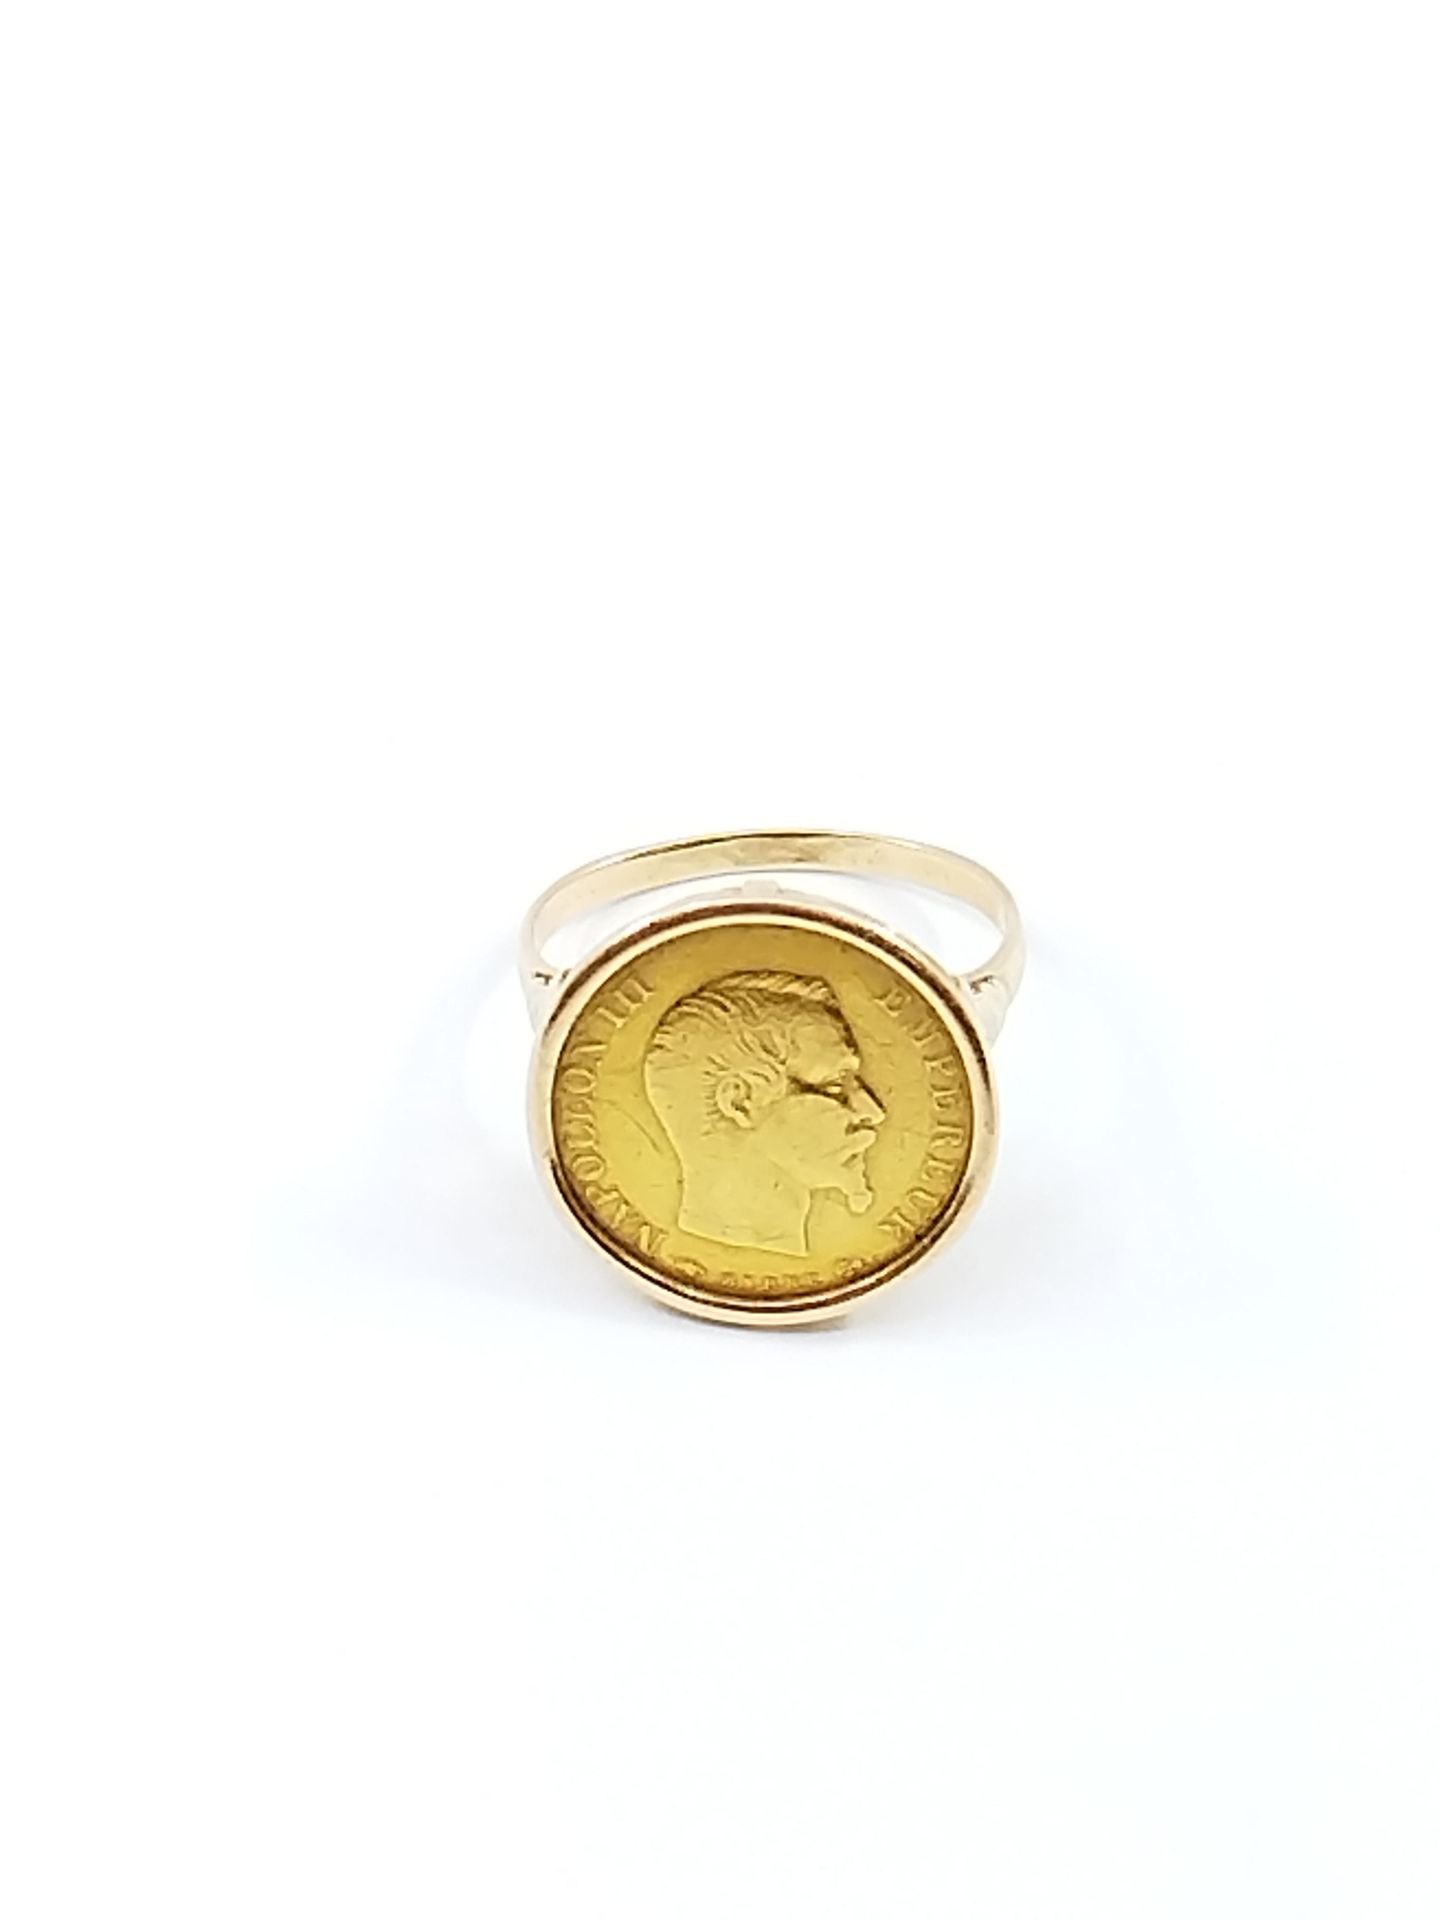 Null 法国作品

750°黄金戒指，含10法郎硬币 

重量 : 7,06 g

TDD 60